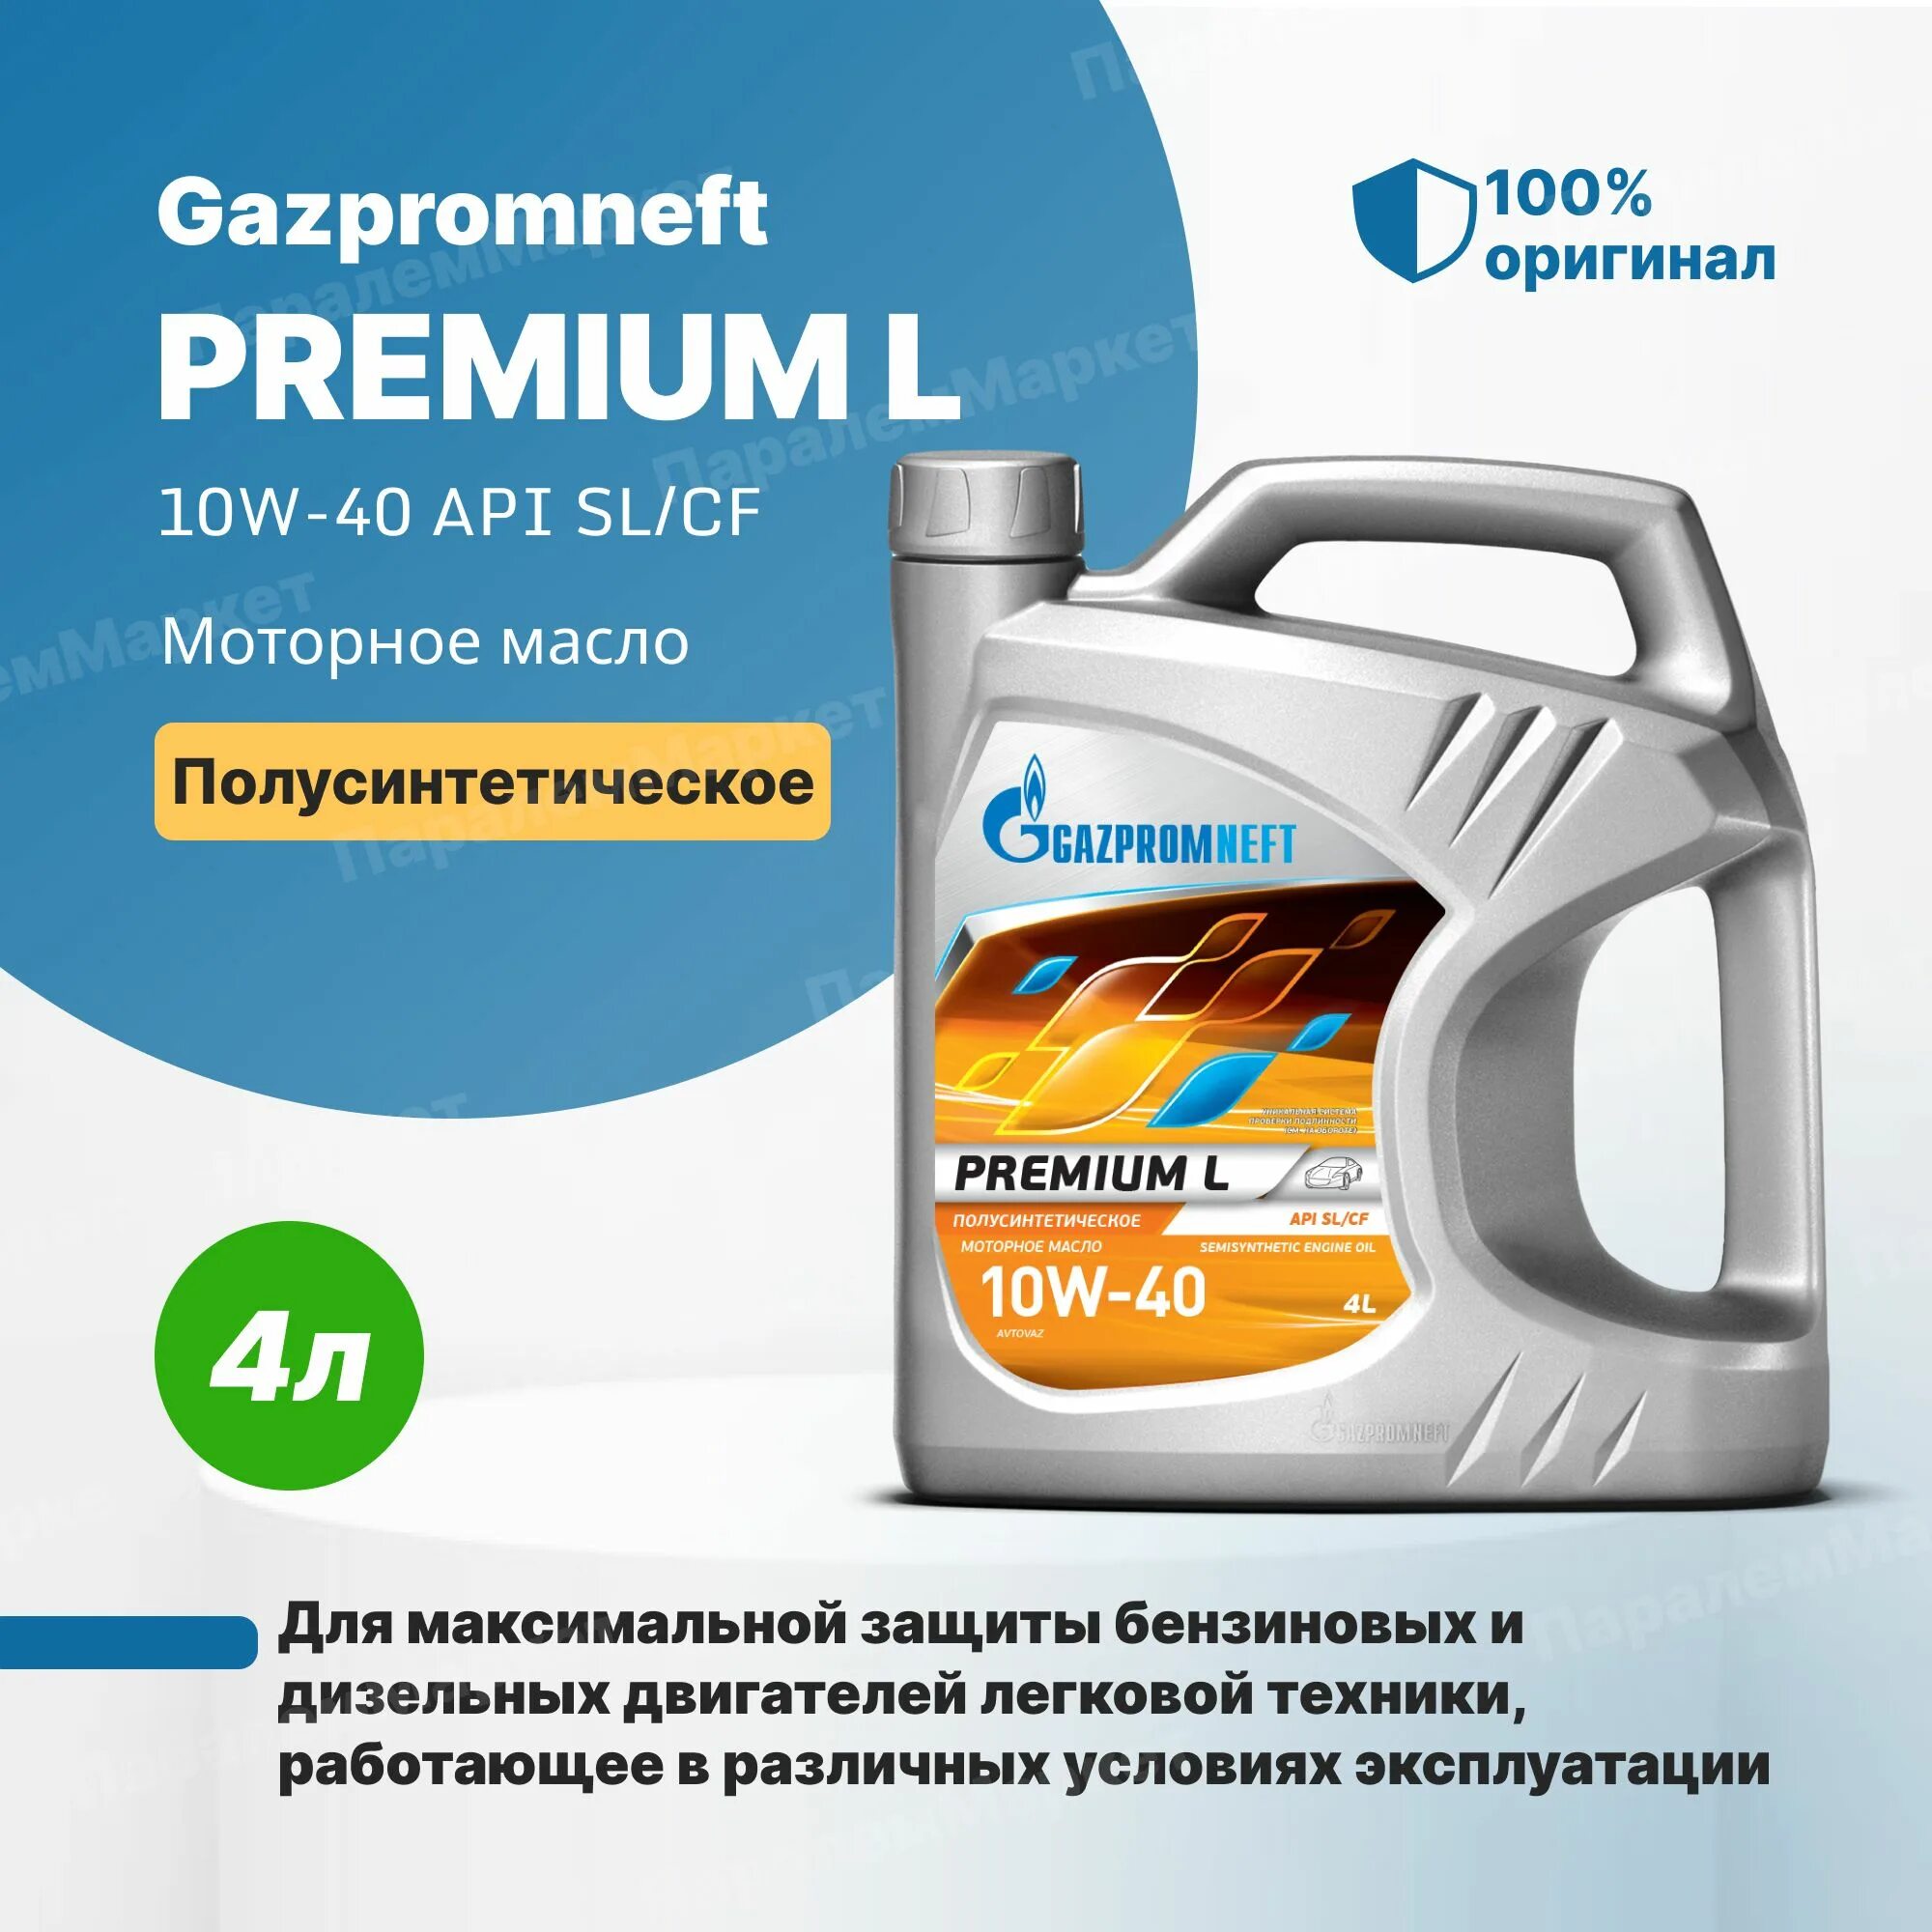 Озон масло газпромнефть. Gazpromneft масло моторное Premium l 10w-40 полусинтетическое 4 л. Газпромнефть премиум л 10w-40. Масло Газпромнефть 10w 40 премиум л.